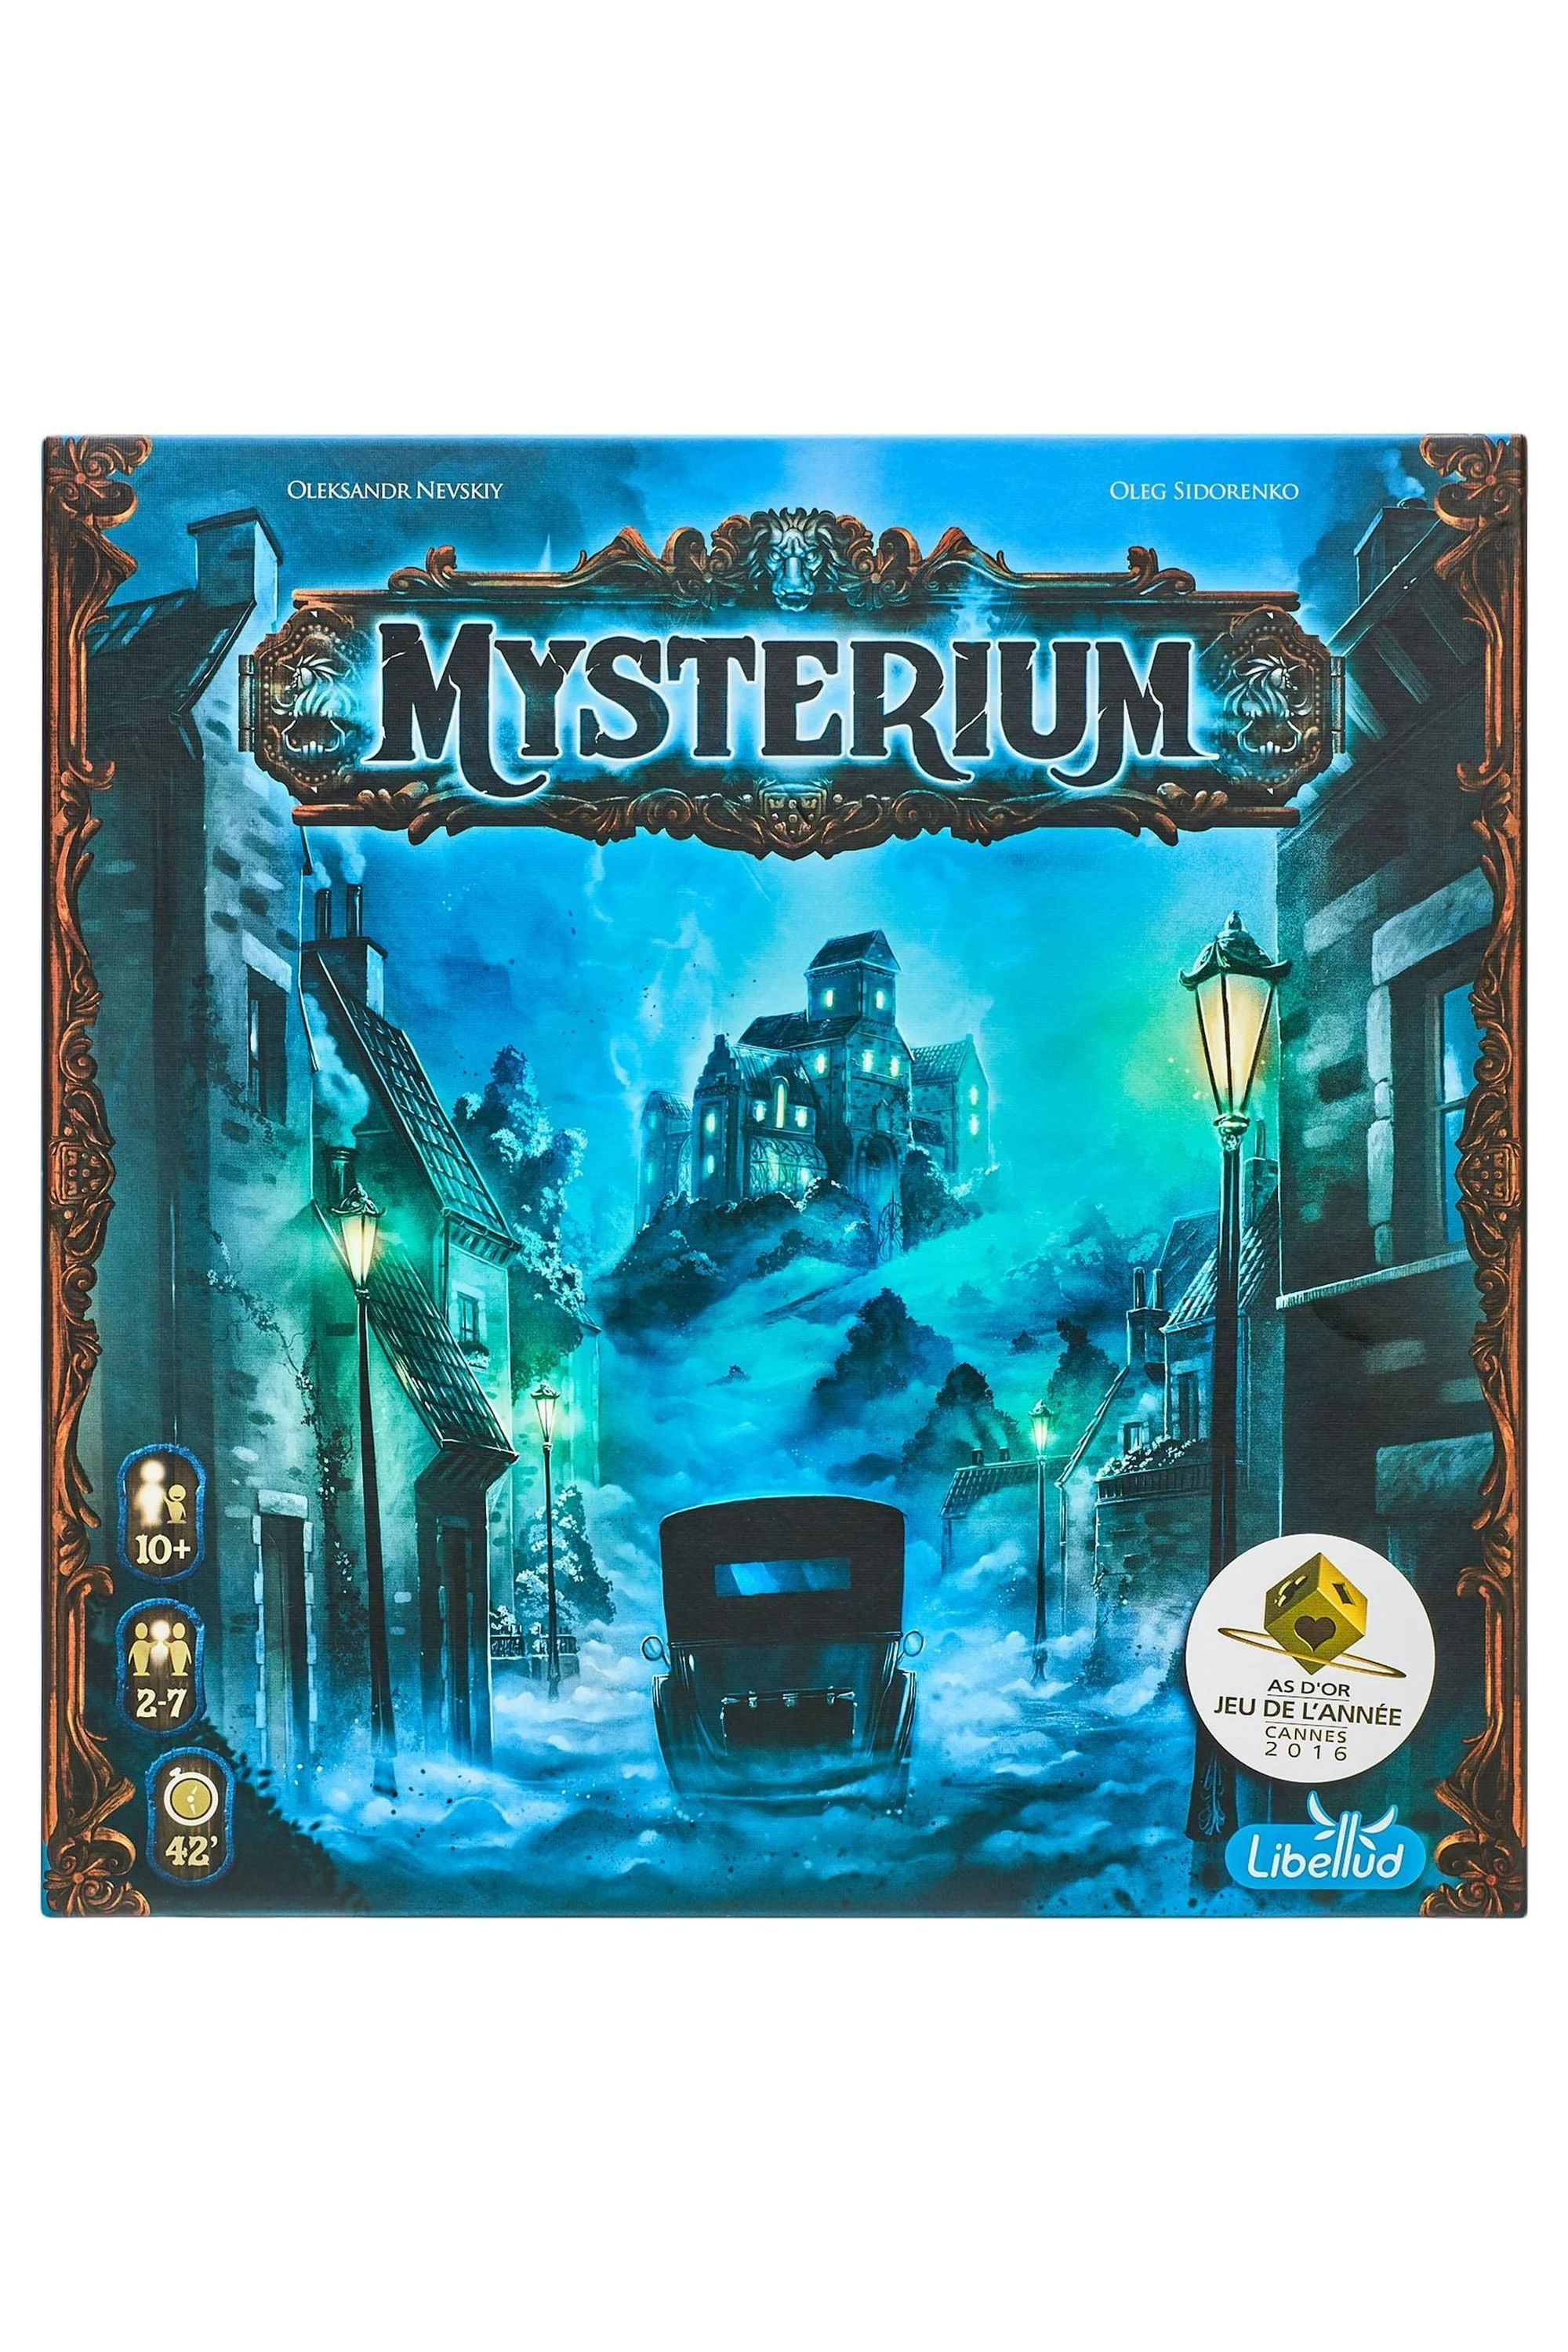 Vẫn là sản phẩm từ board game Mysterium, tác phẩm minh họa có hình thị trấn đầy sương mù trên nền trắng